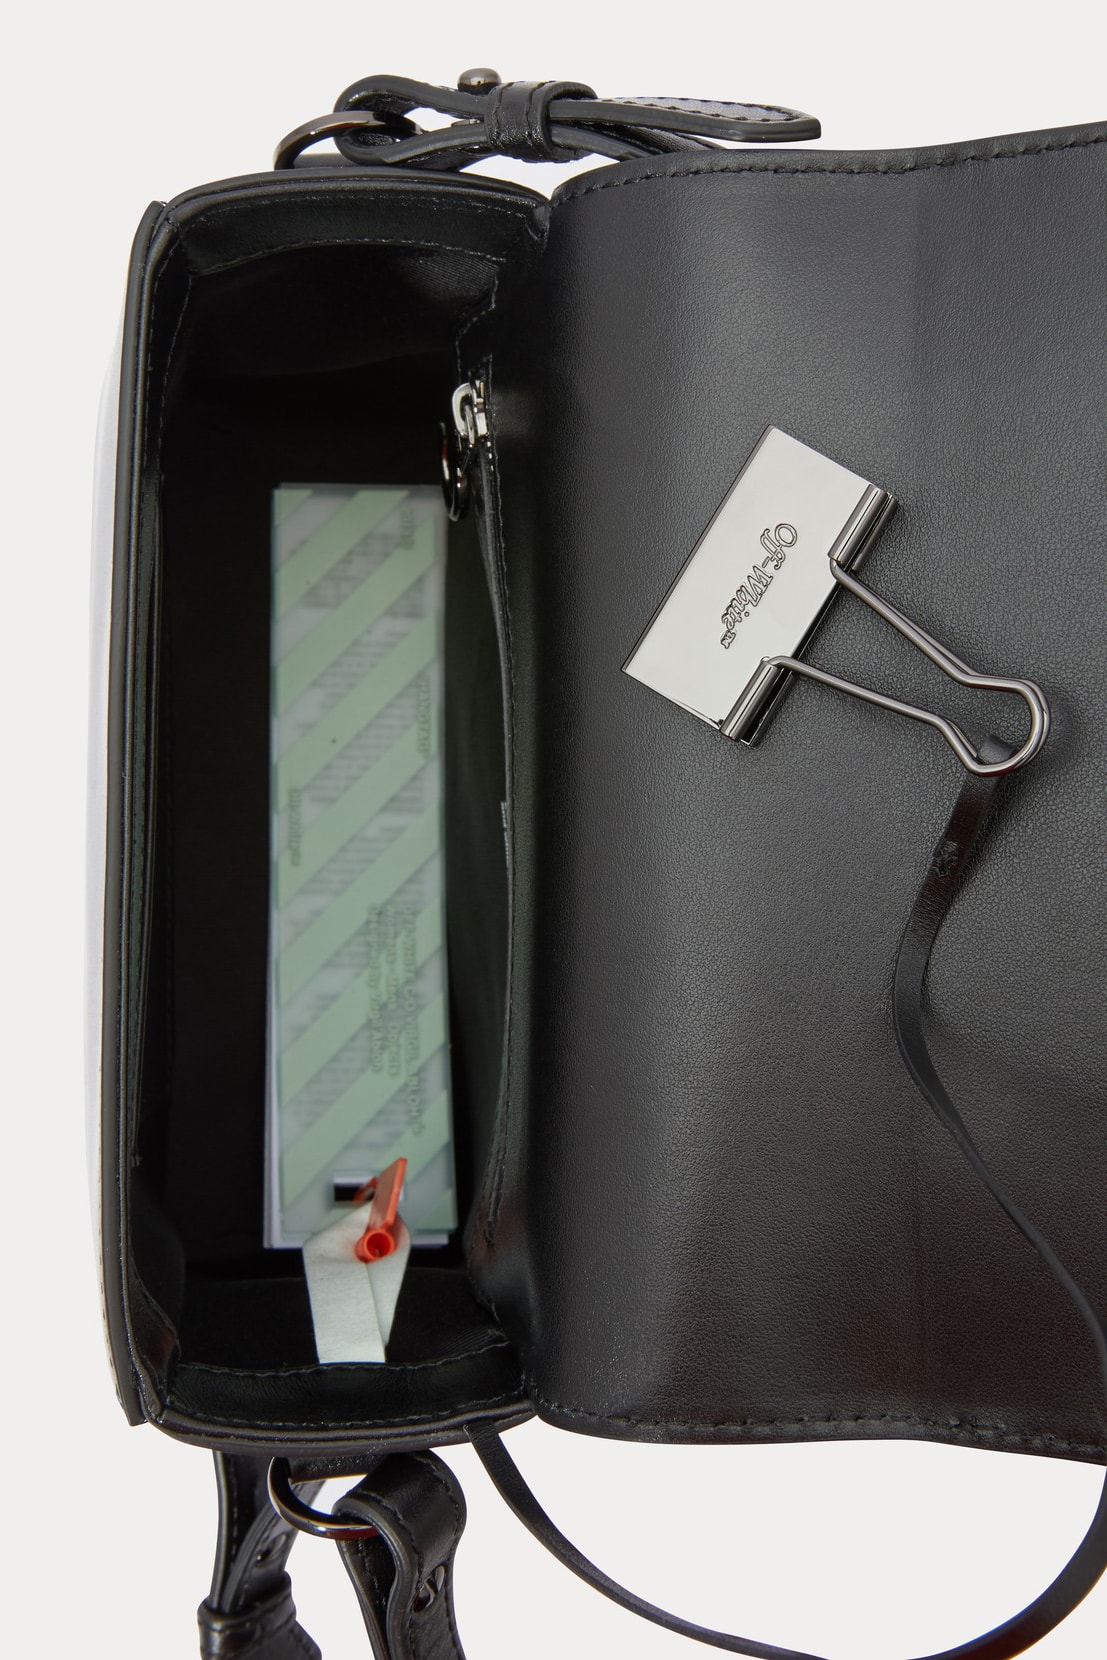 off-white binder clip bag black leather fringe shoulder crossbody